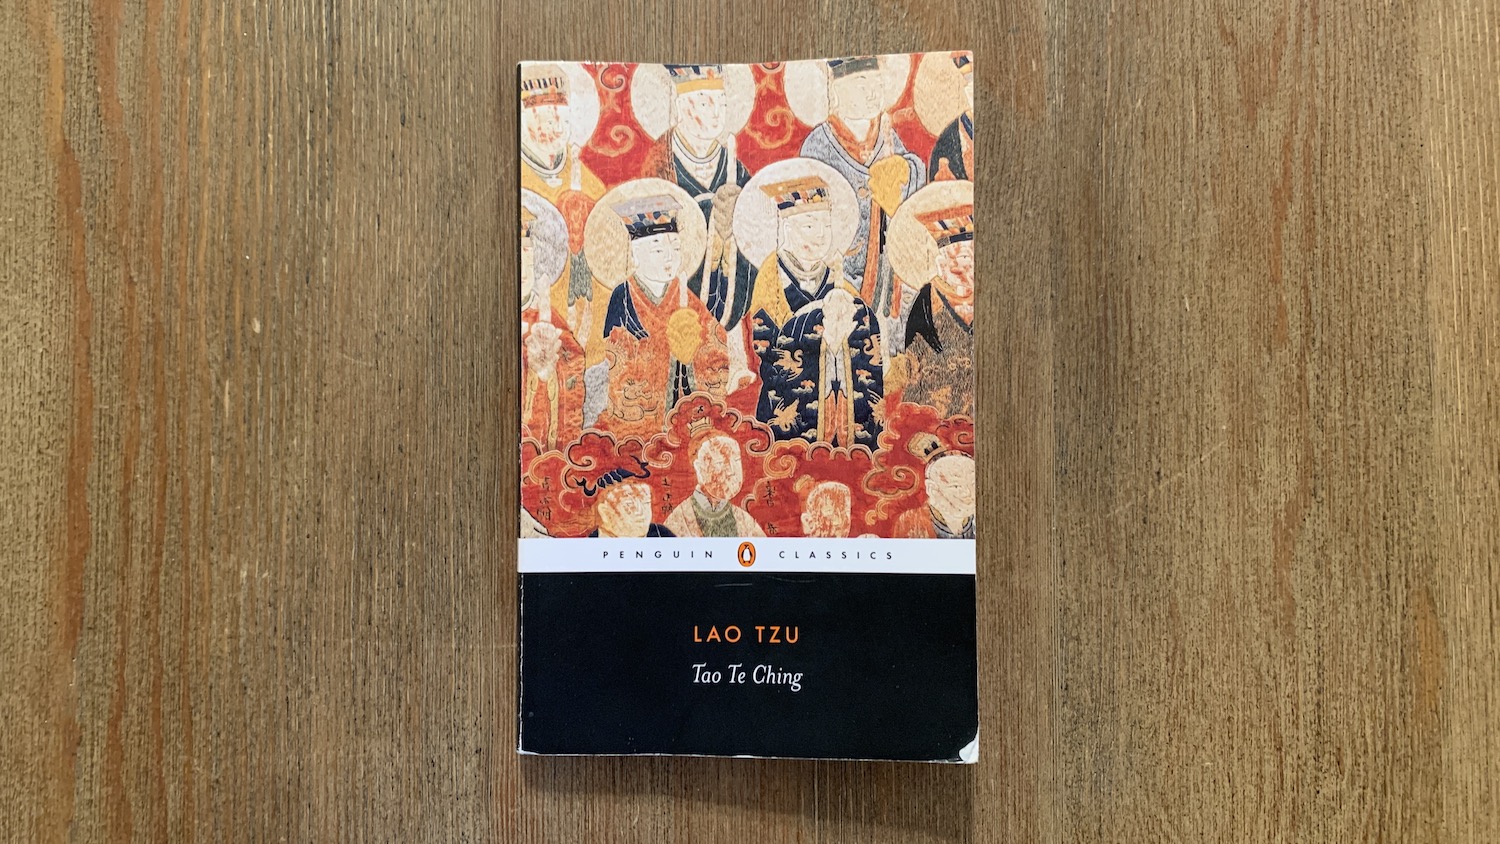 the book, Lao Tzu Tao Te Ching